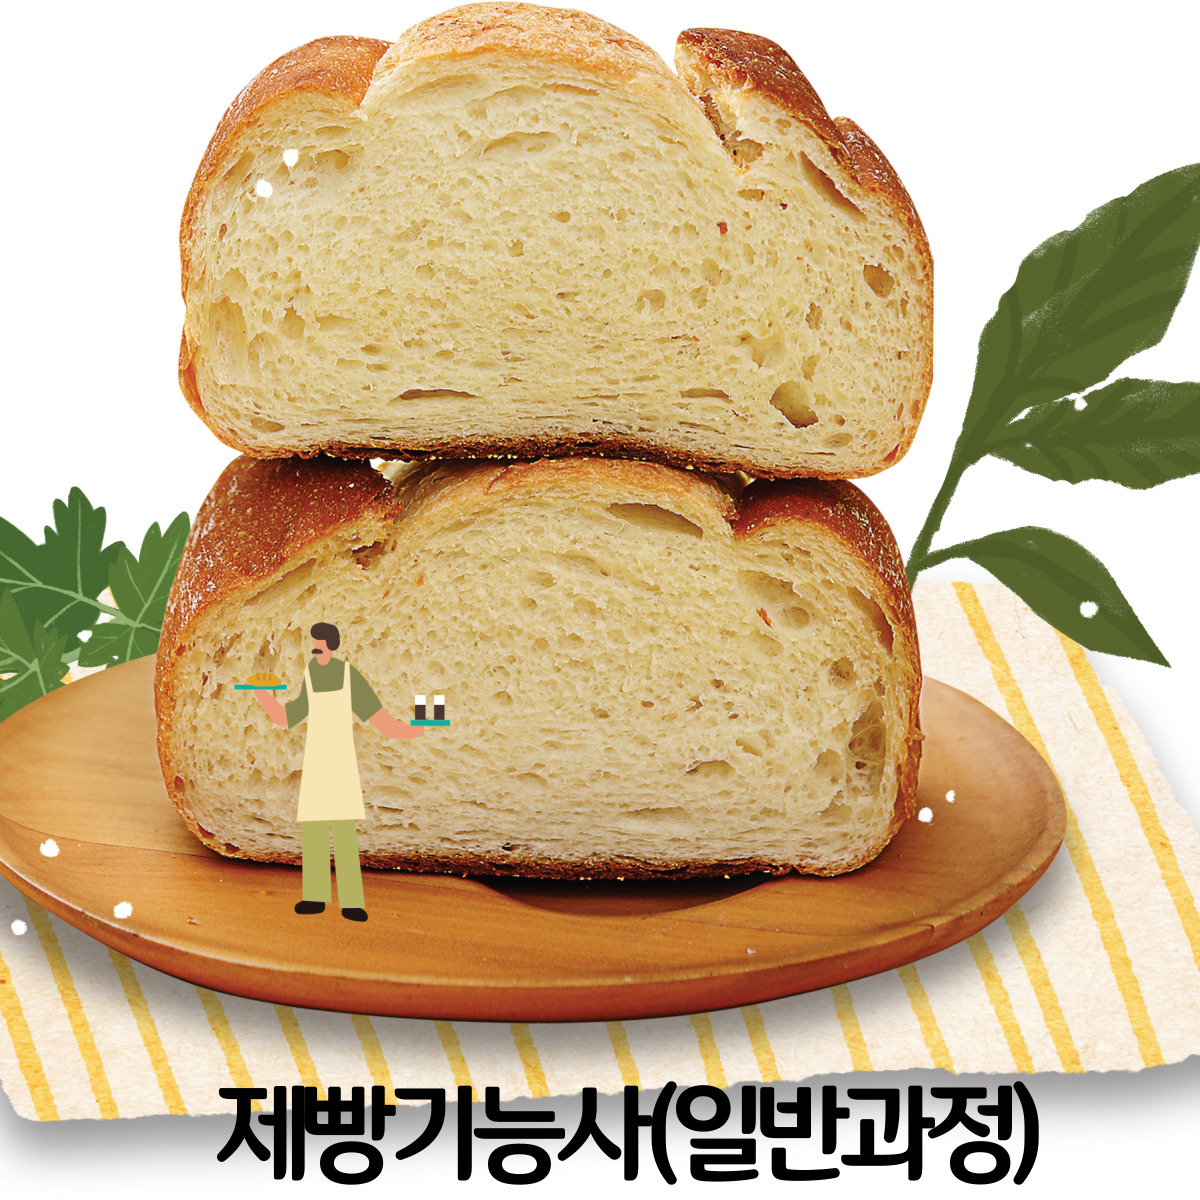 제빵기능사 자격증 취득과정(일반)